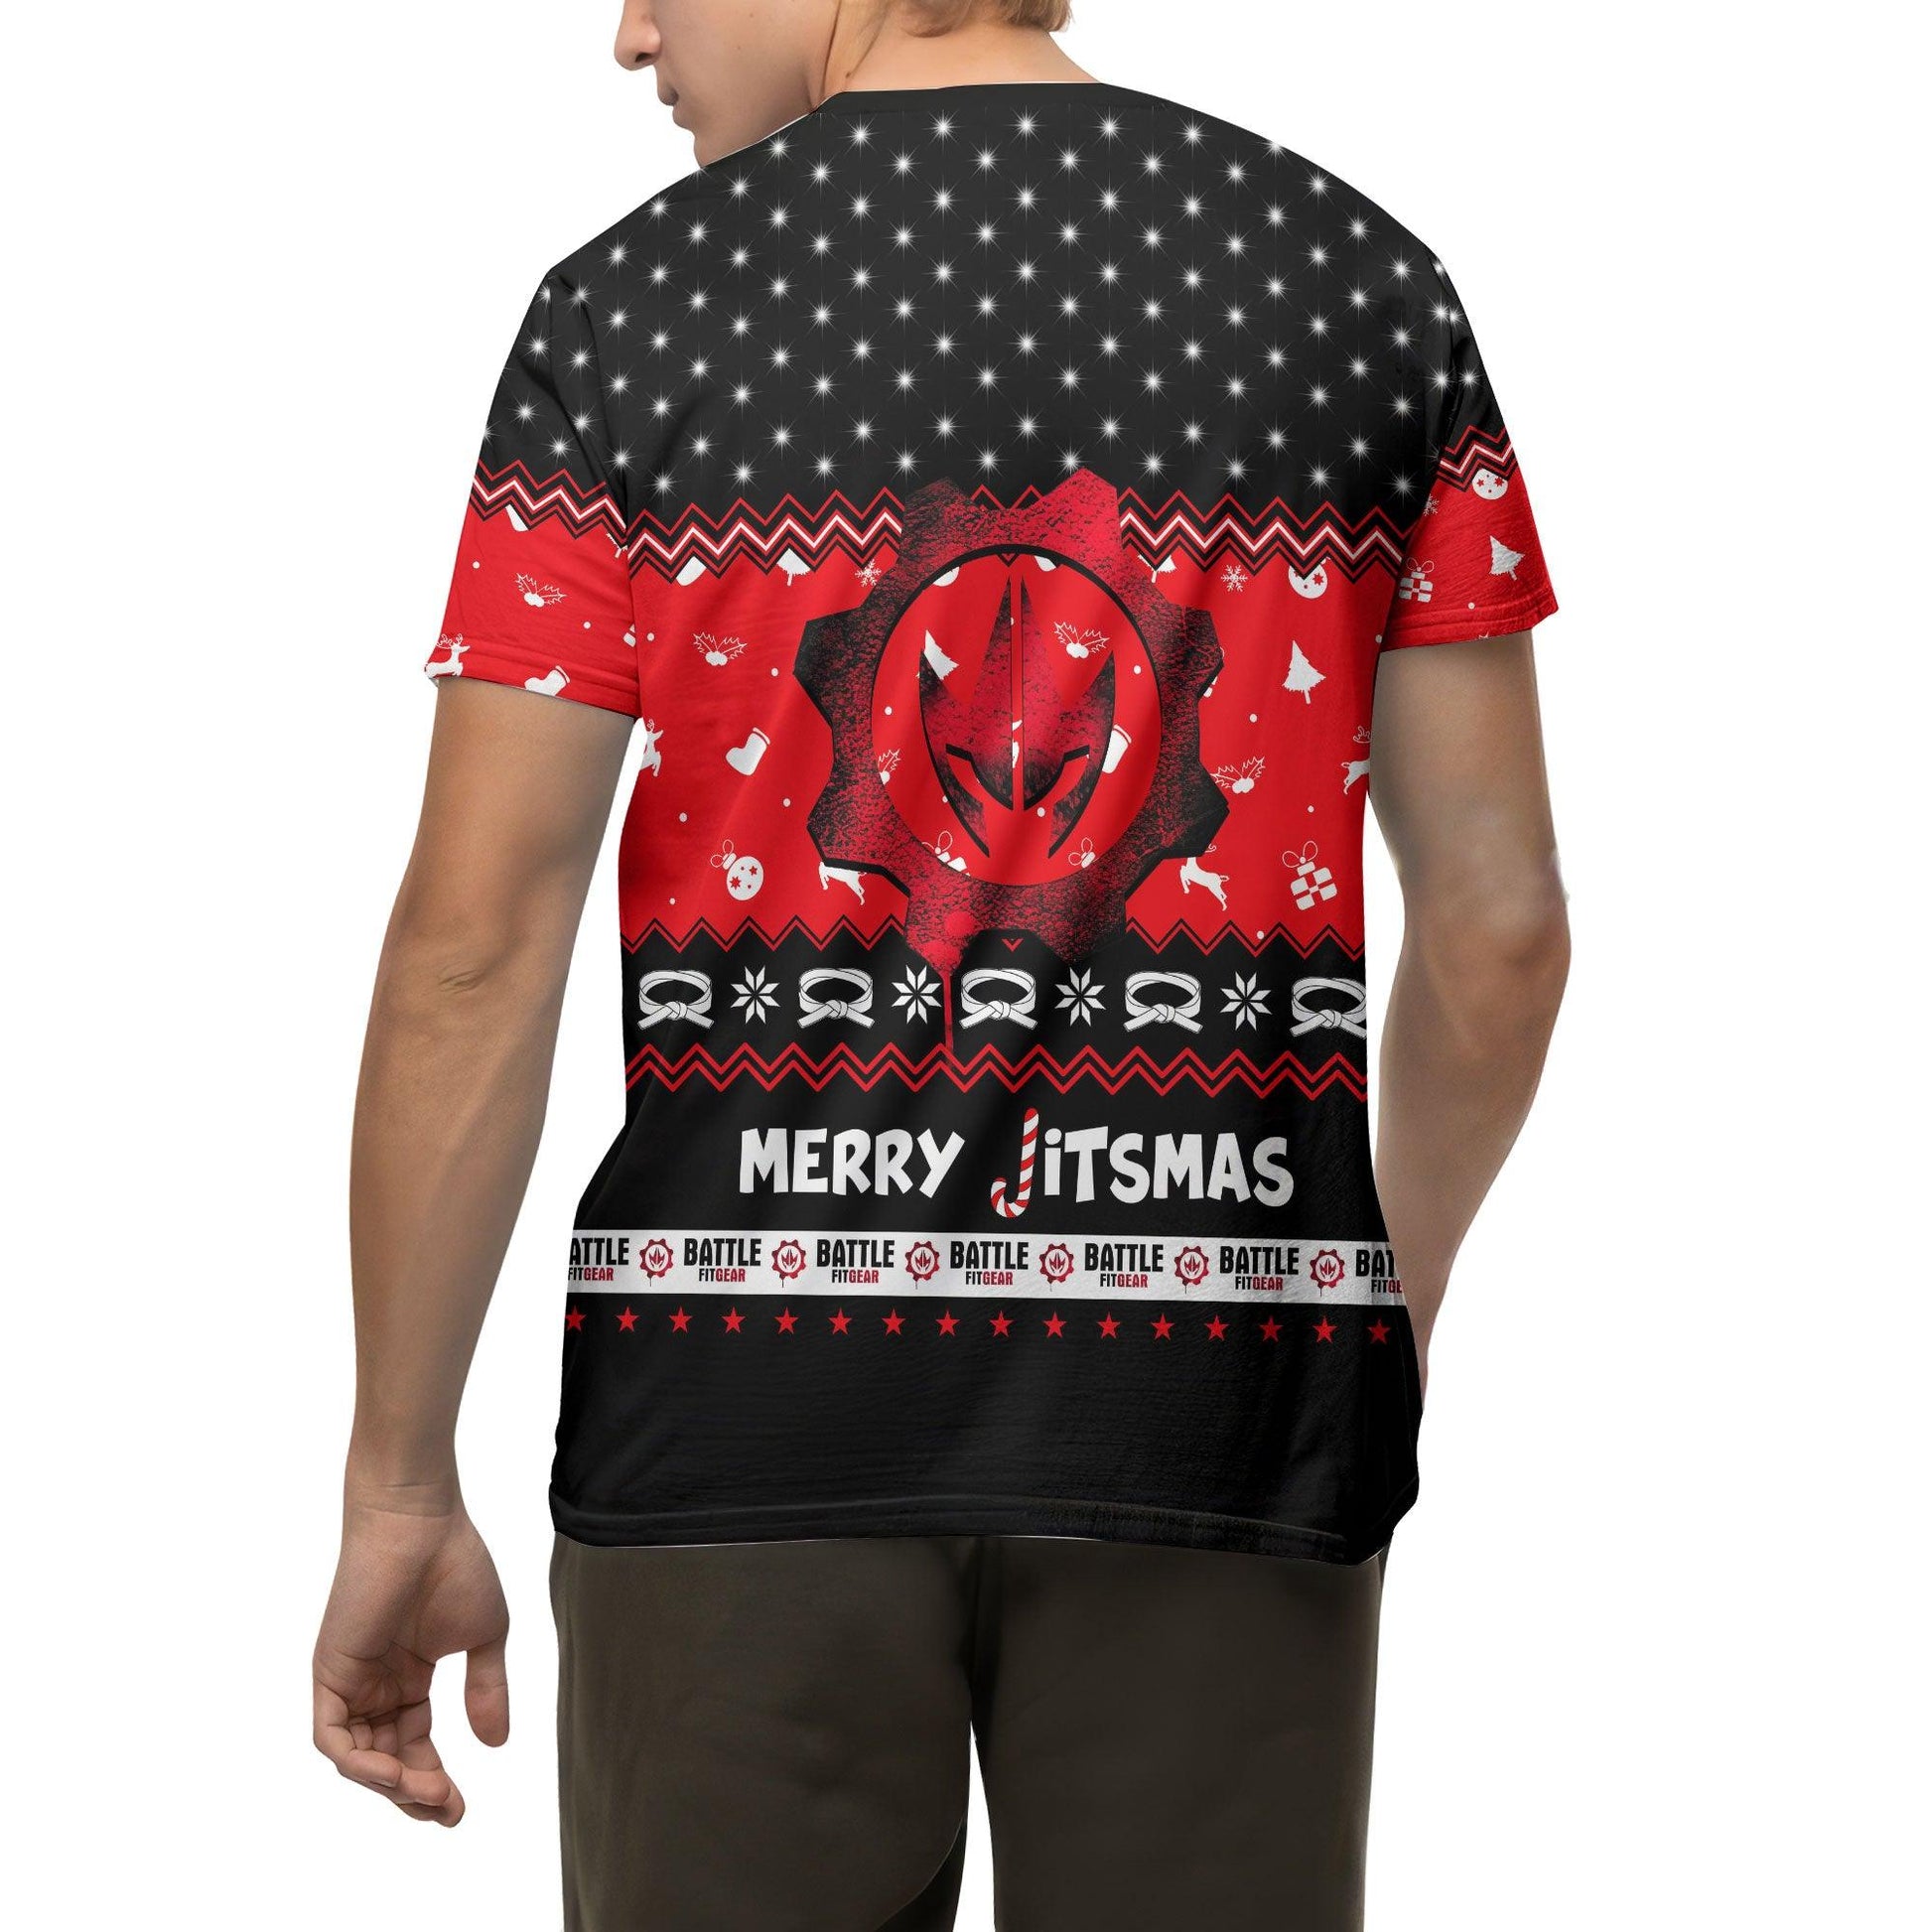 Villain Santa Claus Jitsmas T-shirt